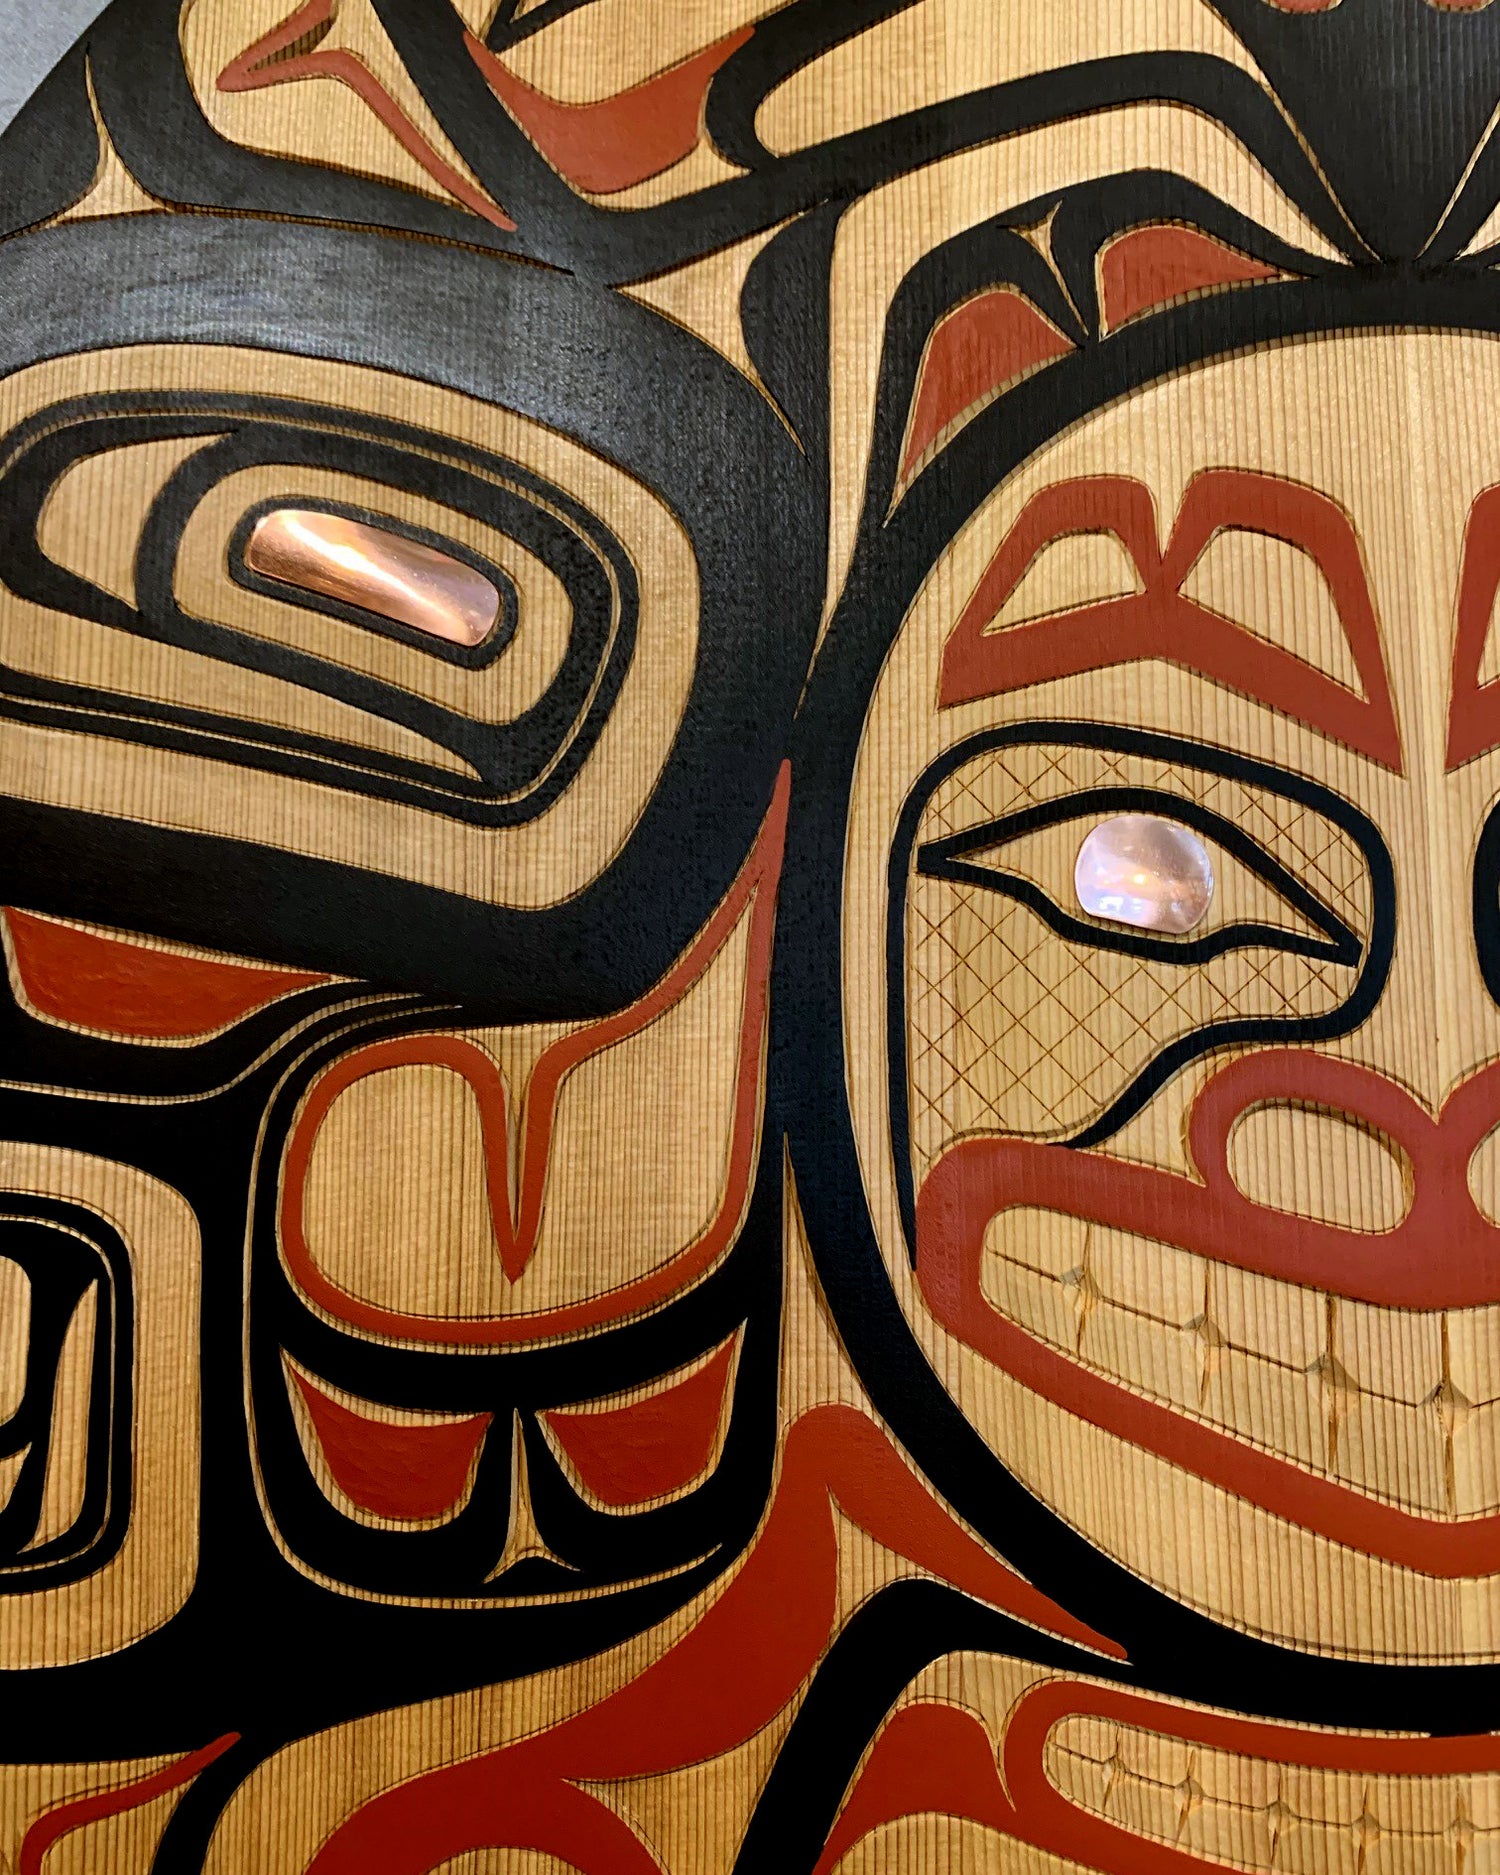 Tlingit Artist Timber Vavalis